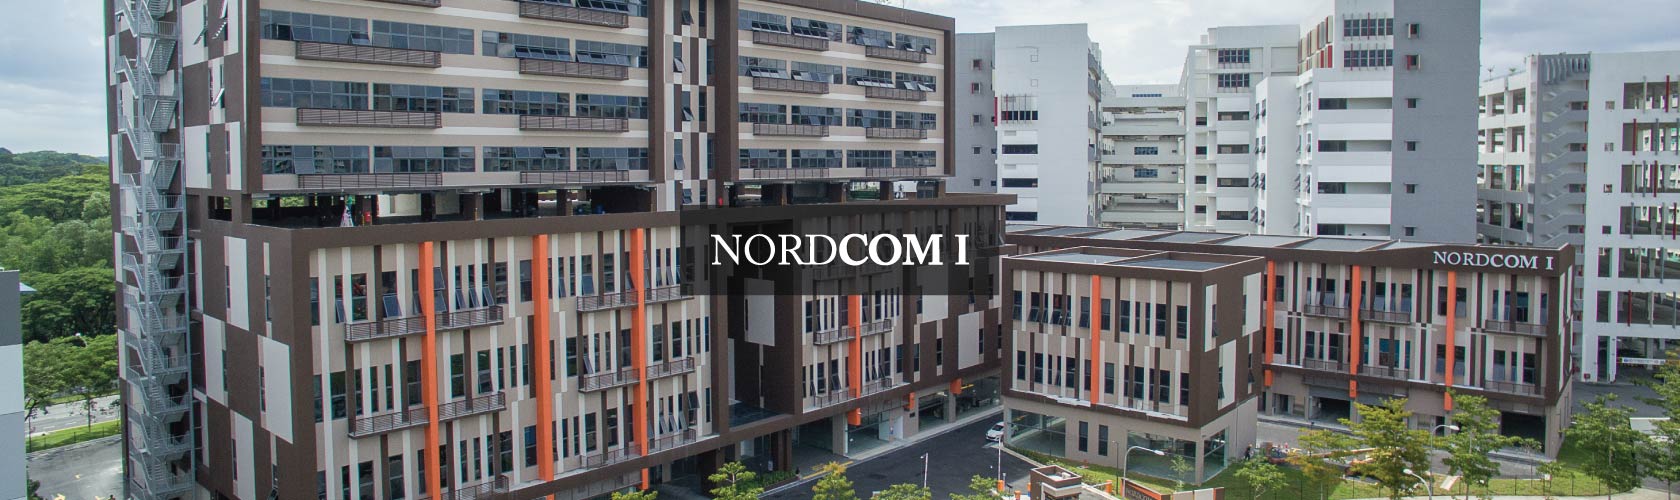 nordcom 1 building facade